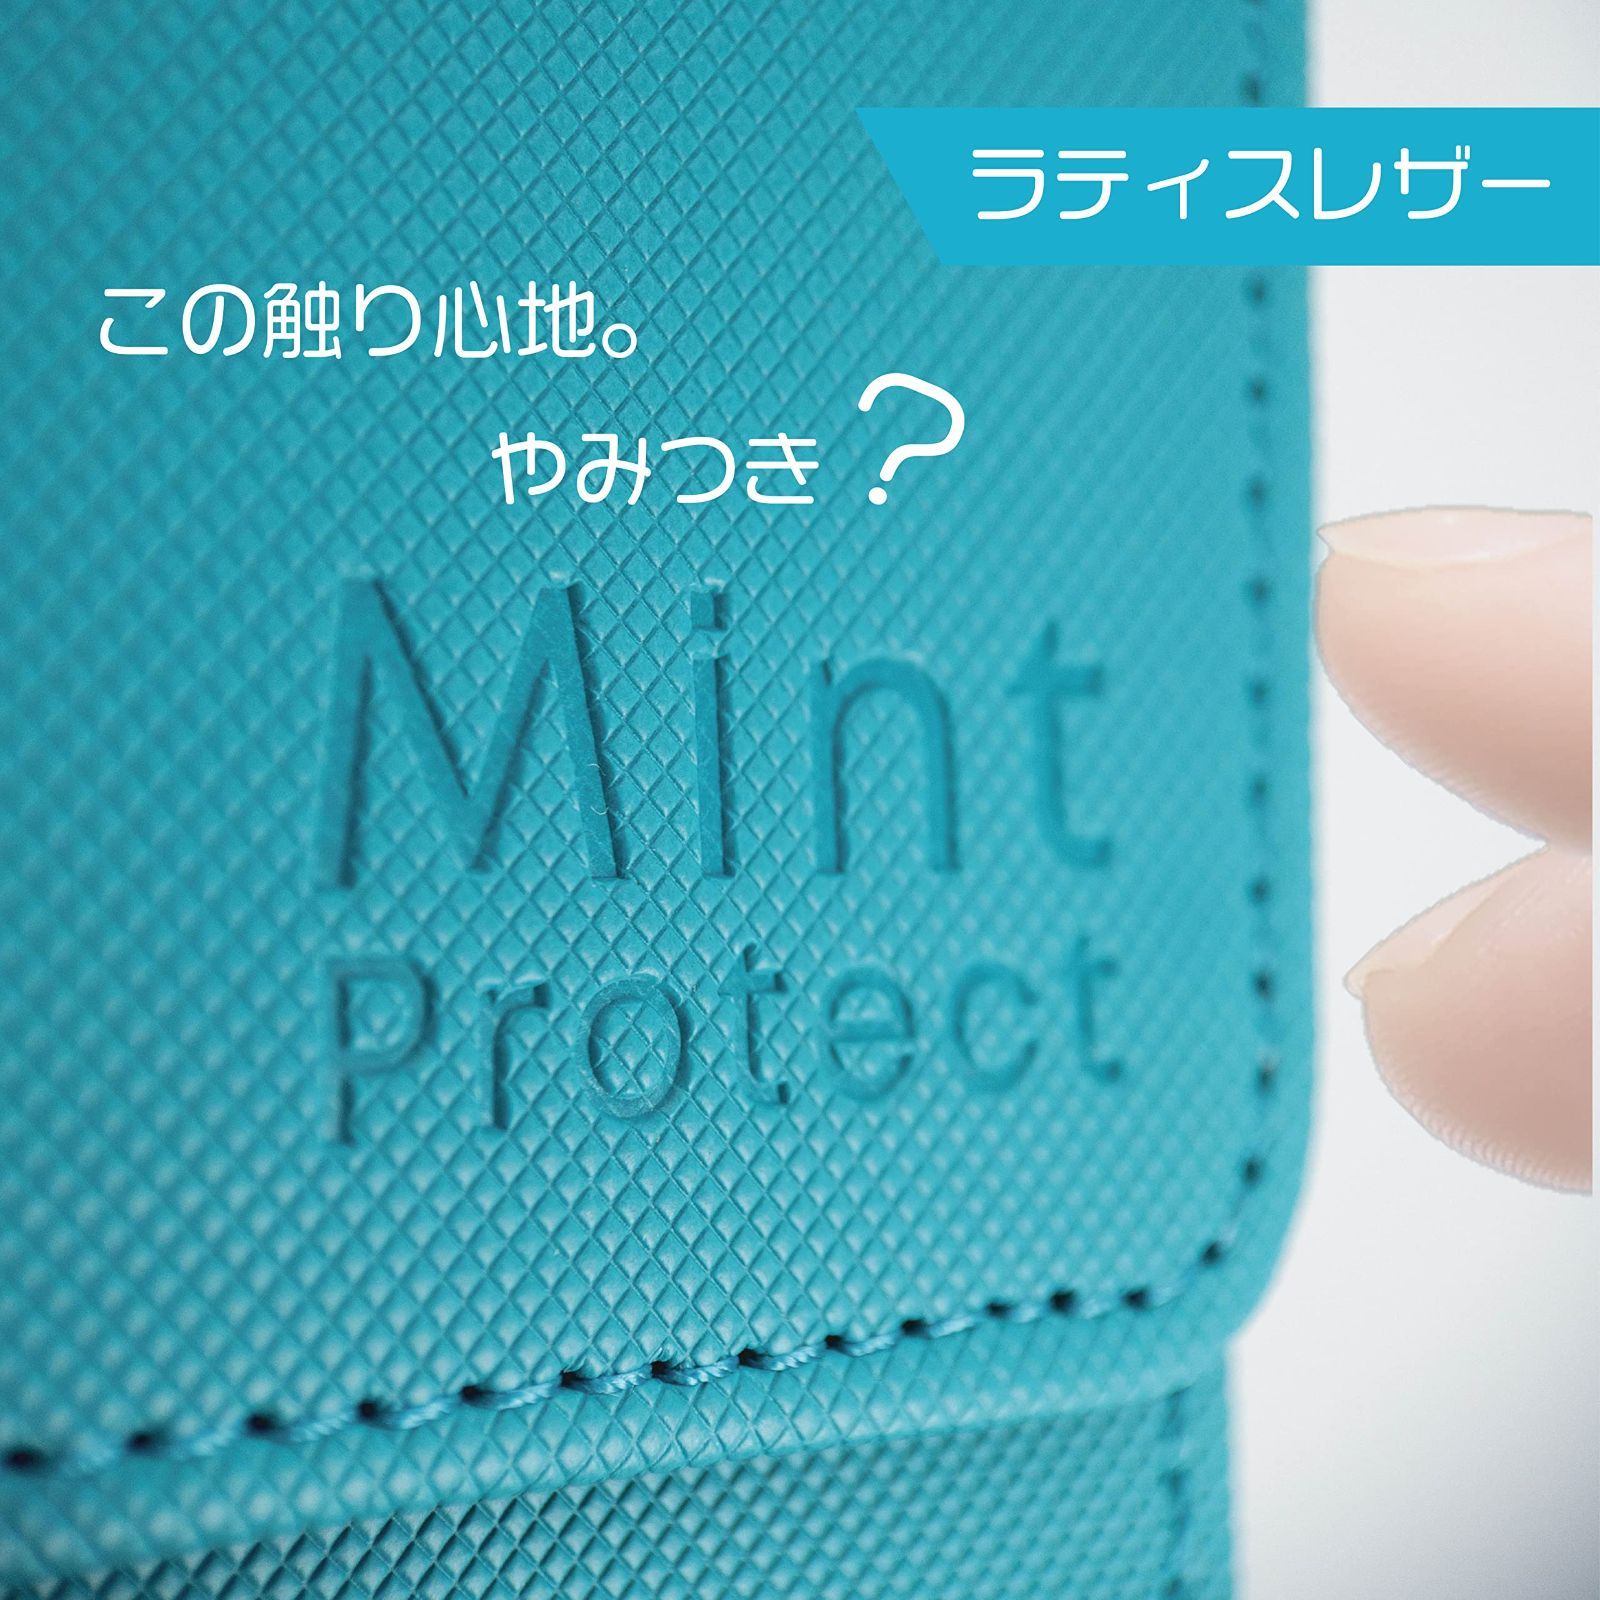 【特価商品】(ティール) 収納 デッキケース 硬質ケース フルプロテクトスリーブ 400 トレカ ストレージボックス Protect Mint